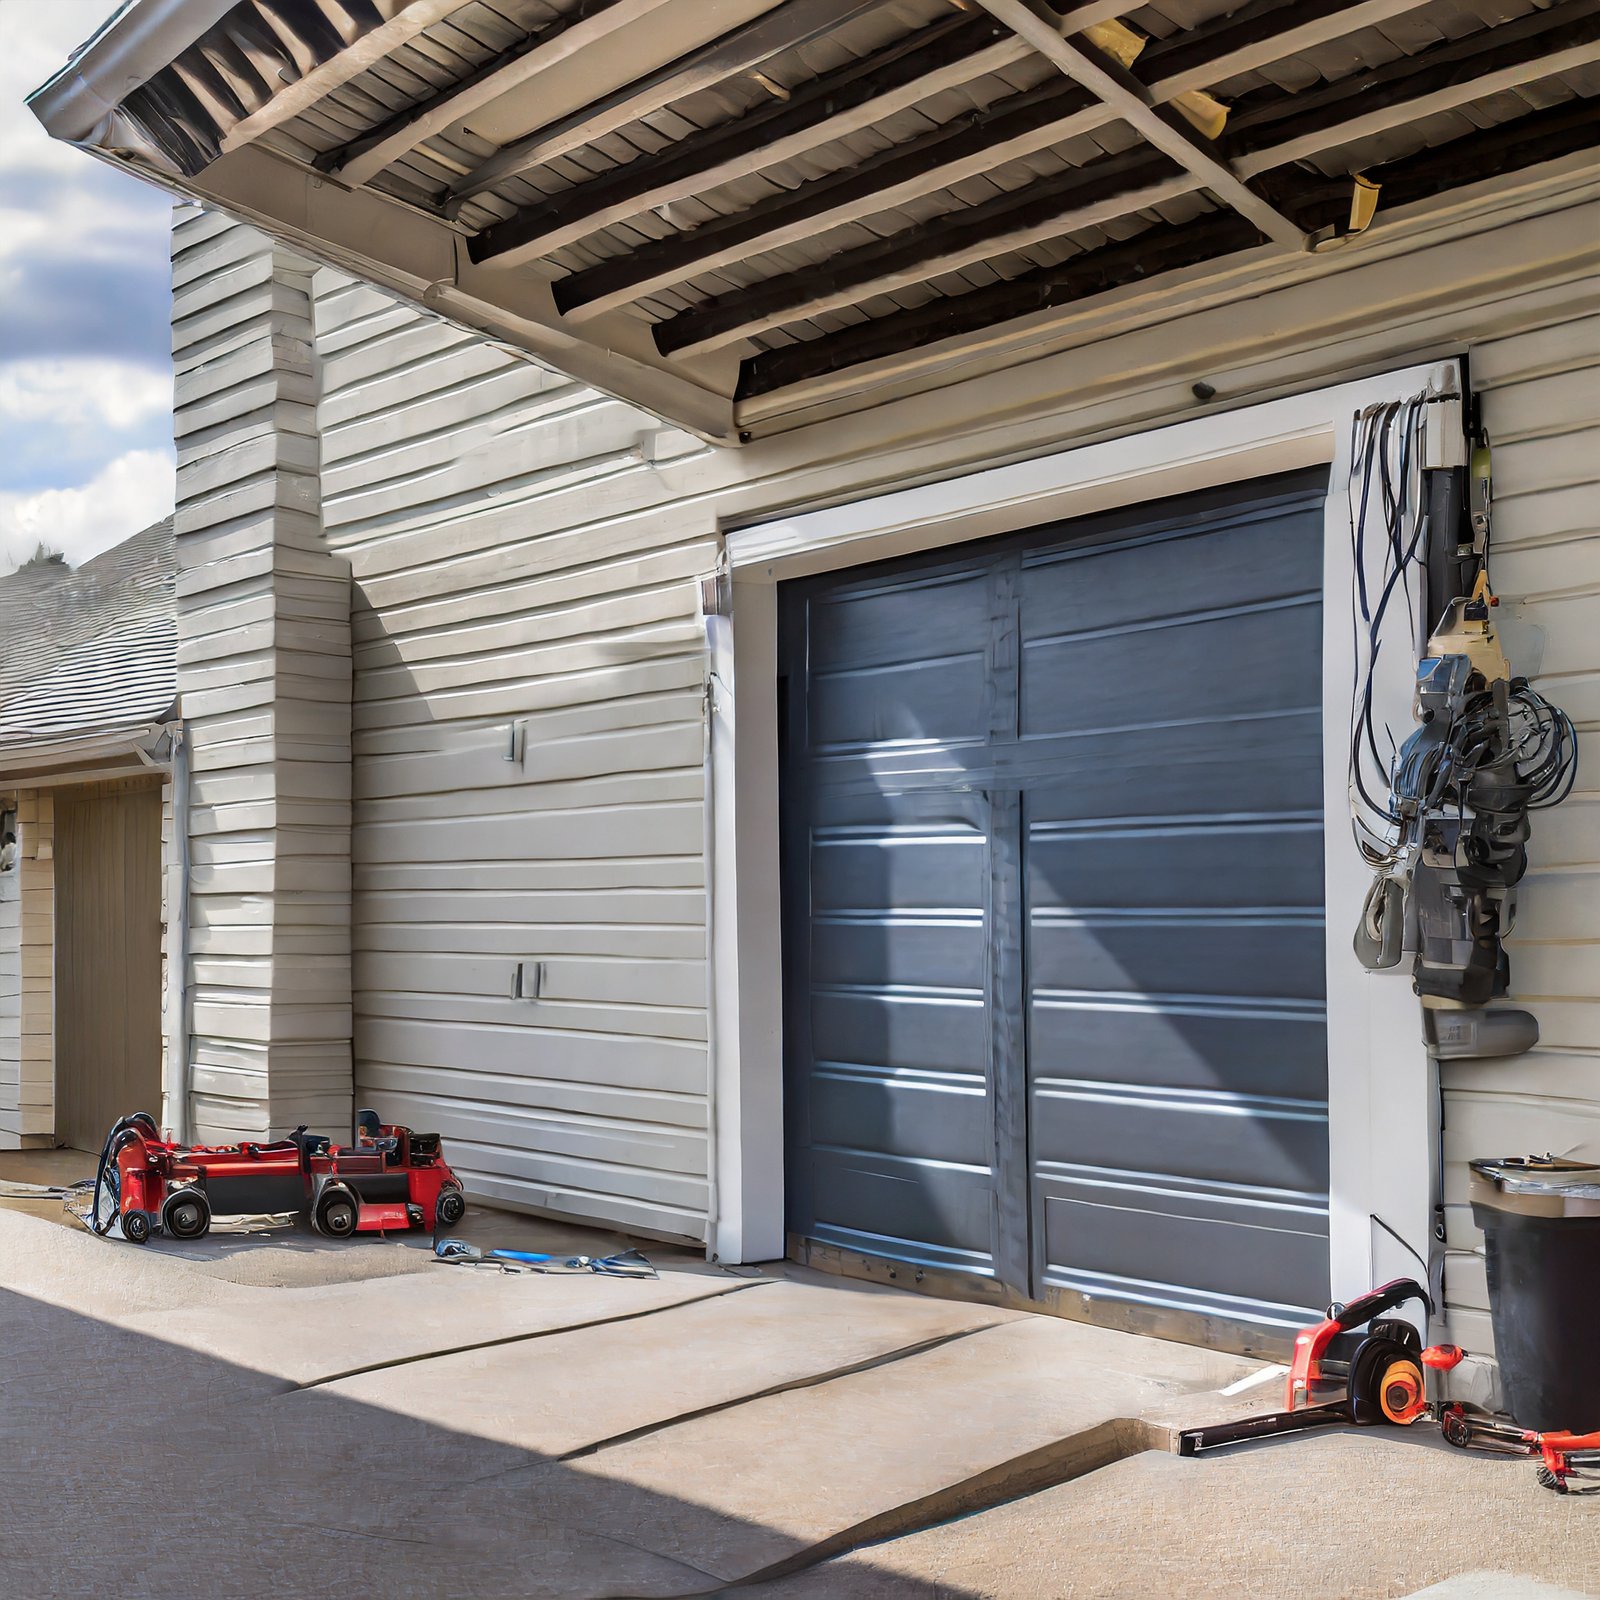 The Benefits of Choosing Professional Garage Door Services in Mclean VA